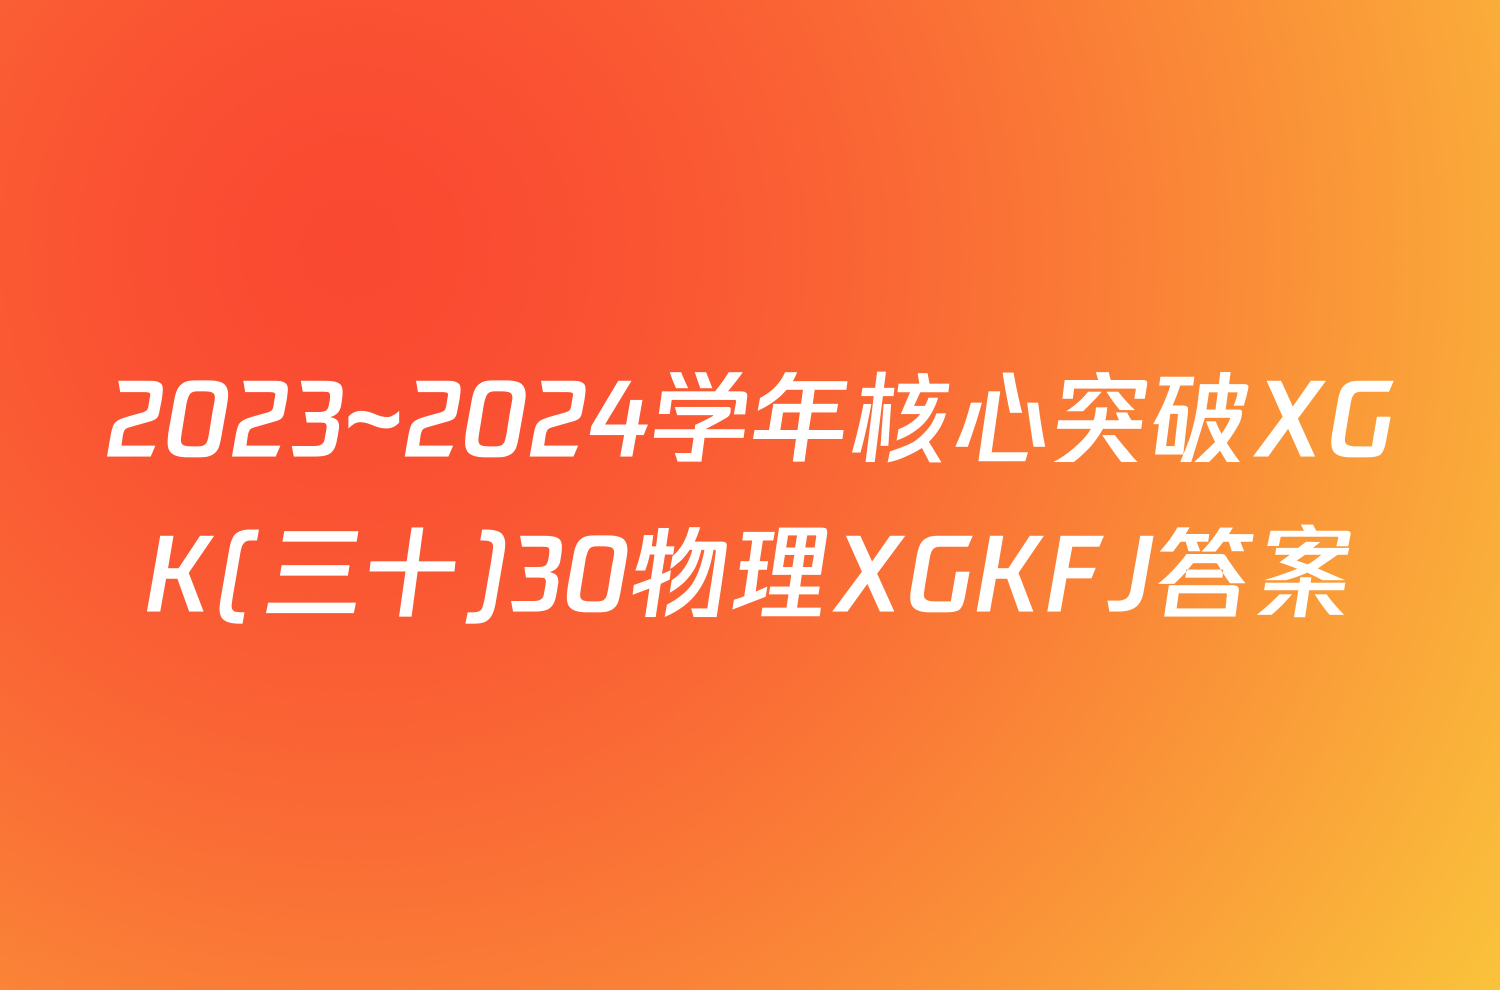 2023~2024学年核心突破XGK(三十)30物理XGKFJ答案